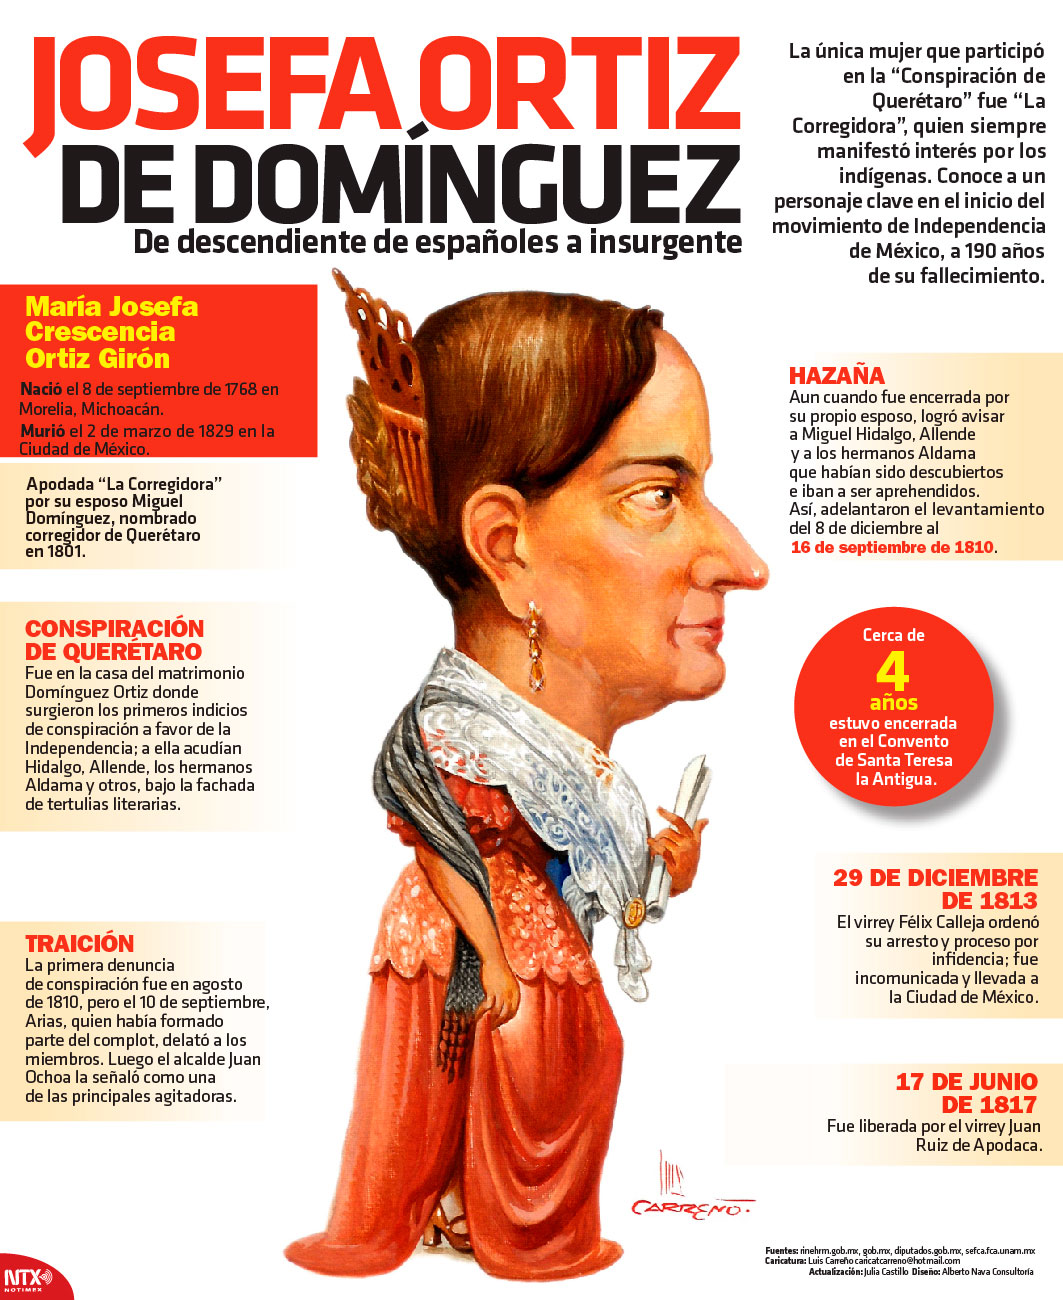 Josefa Ortiz de Domnguez